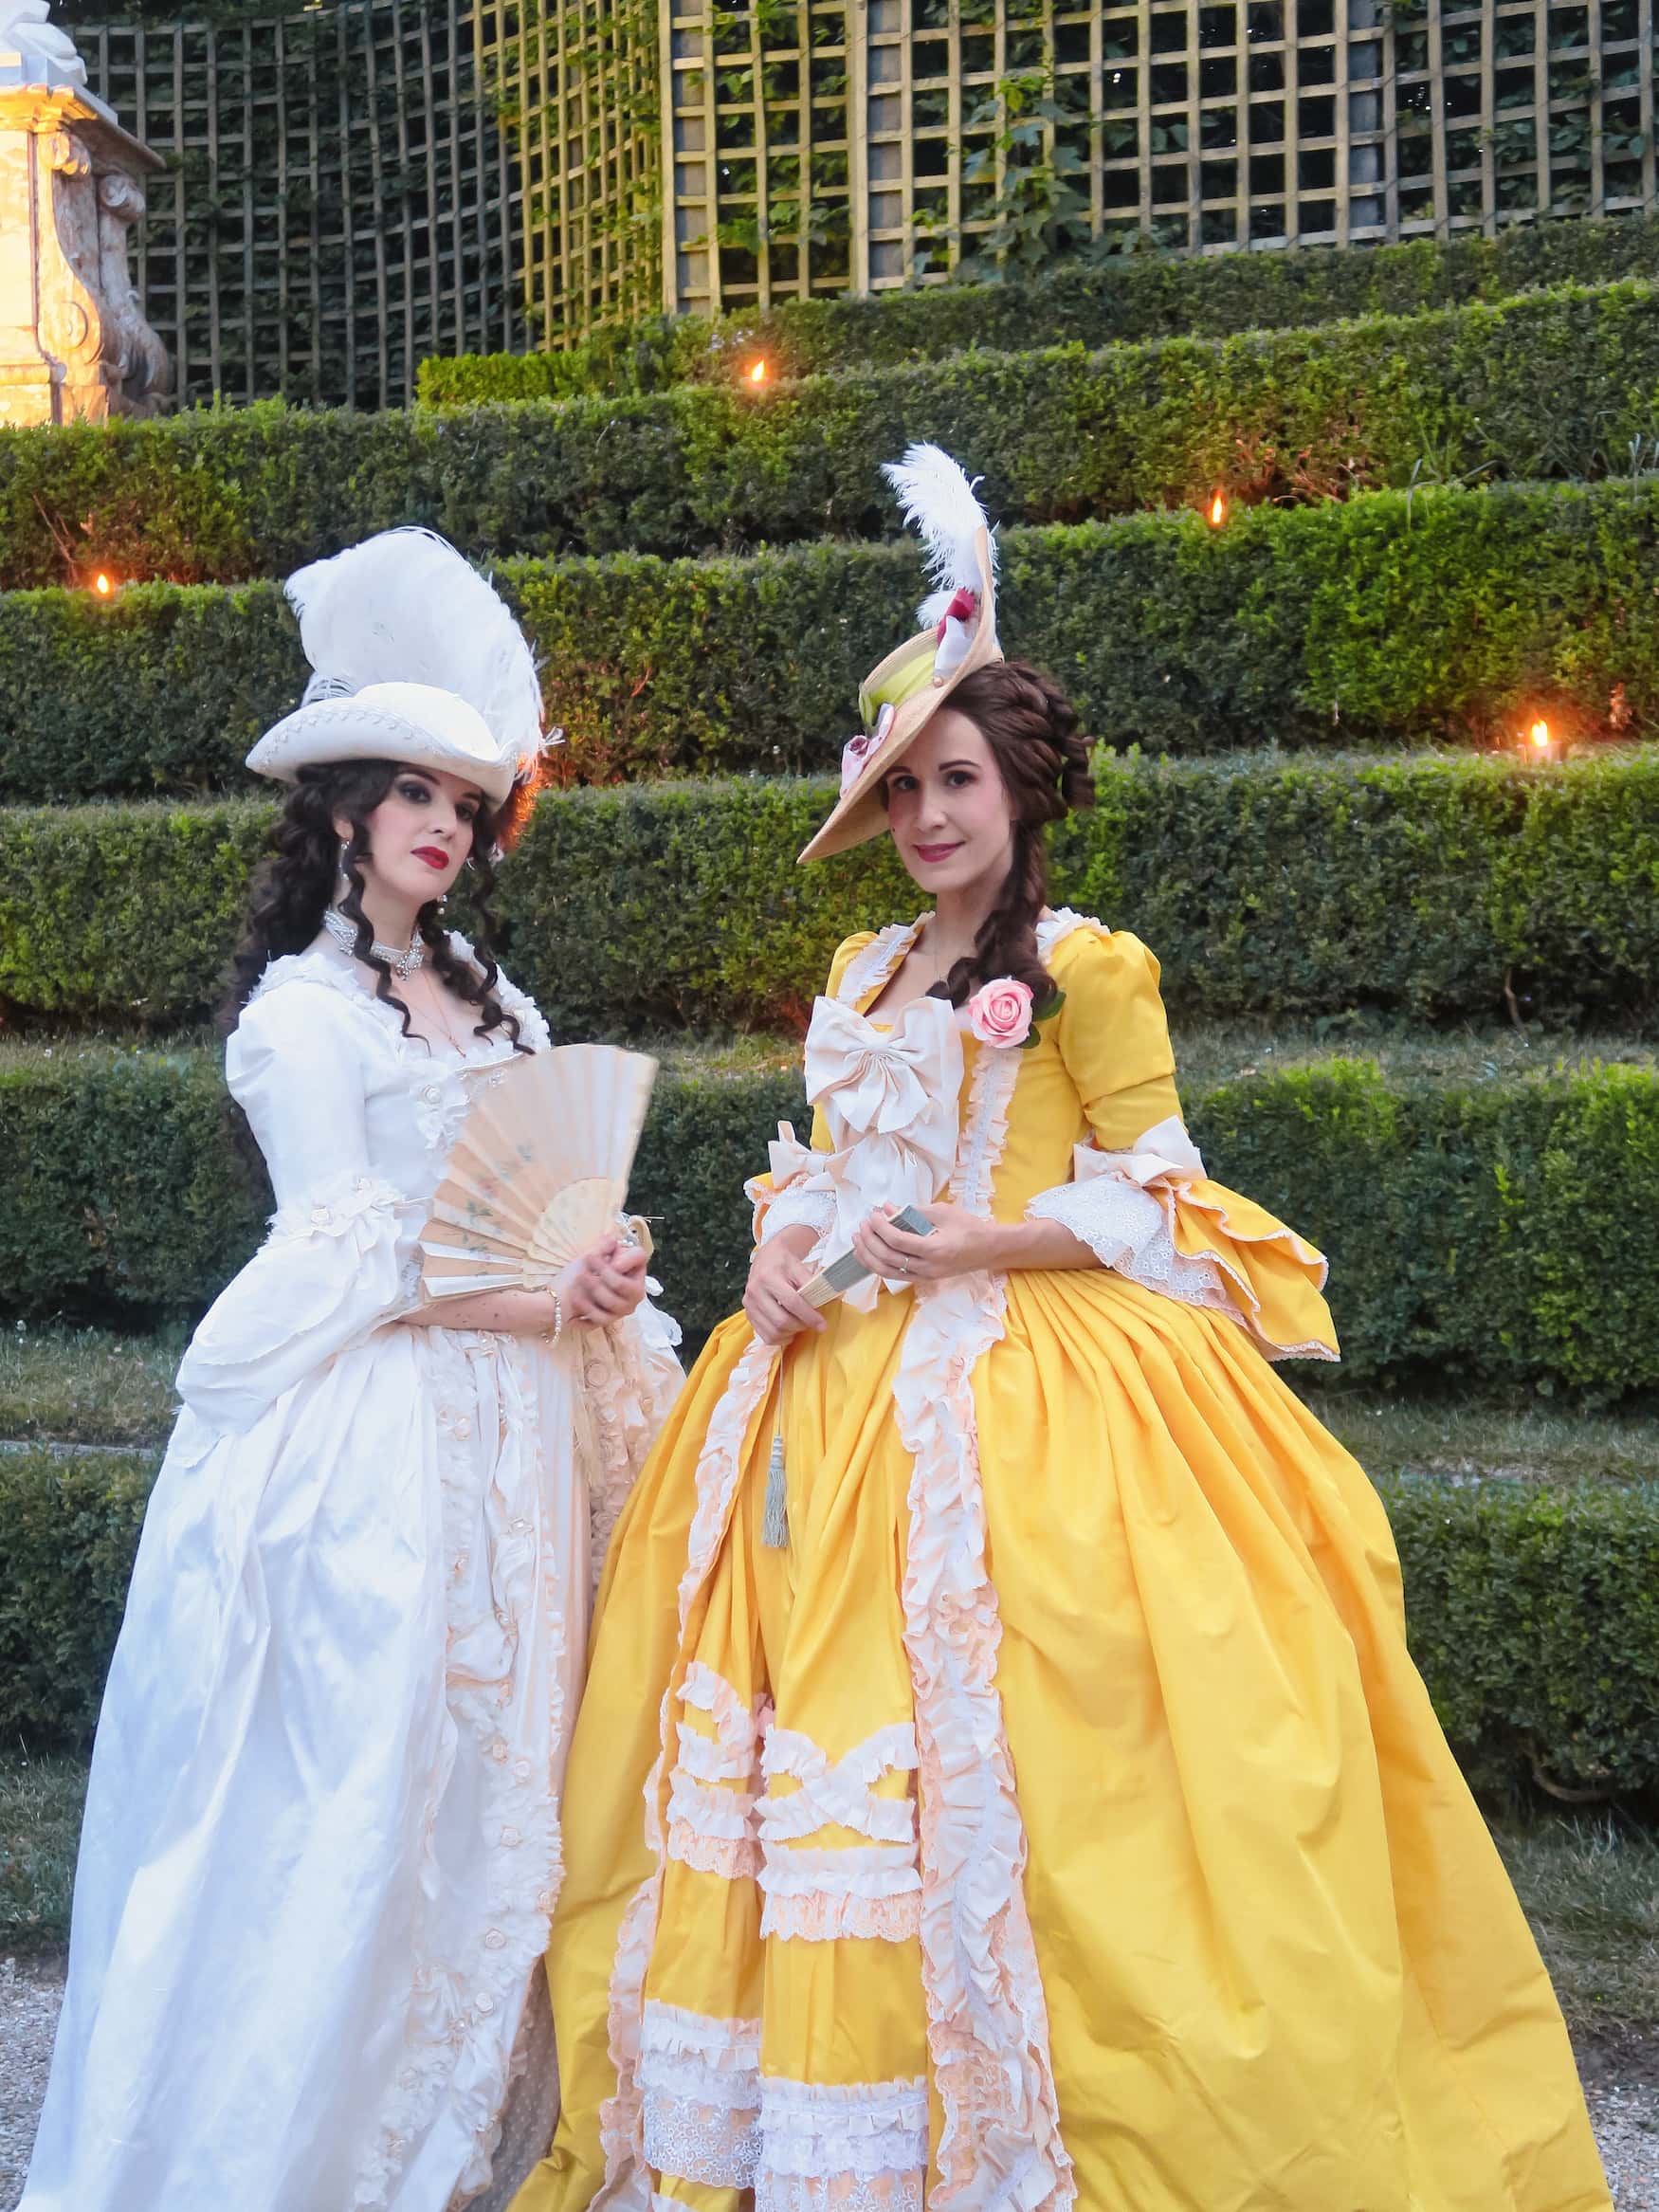 Kostümball im Schlossgarten von Versailles